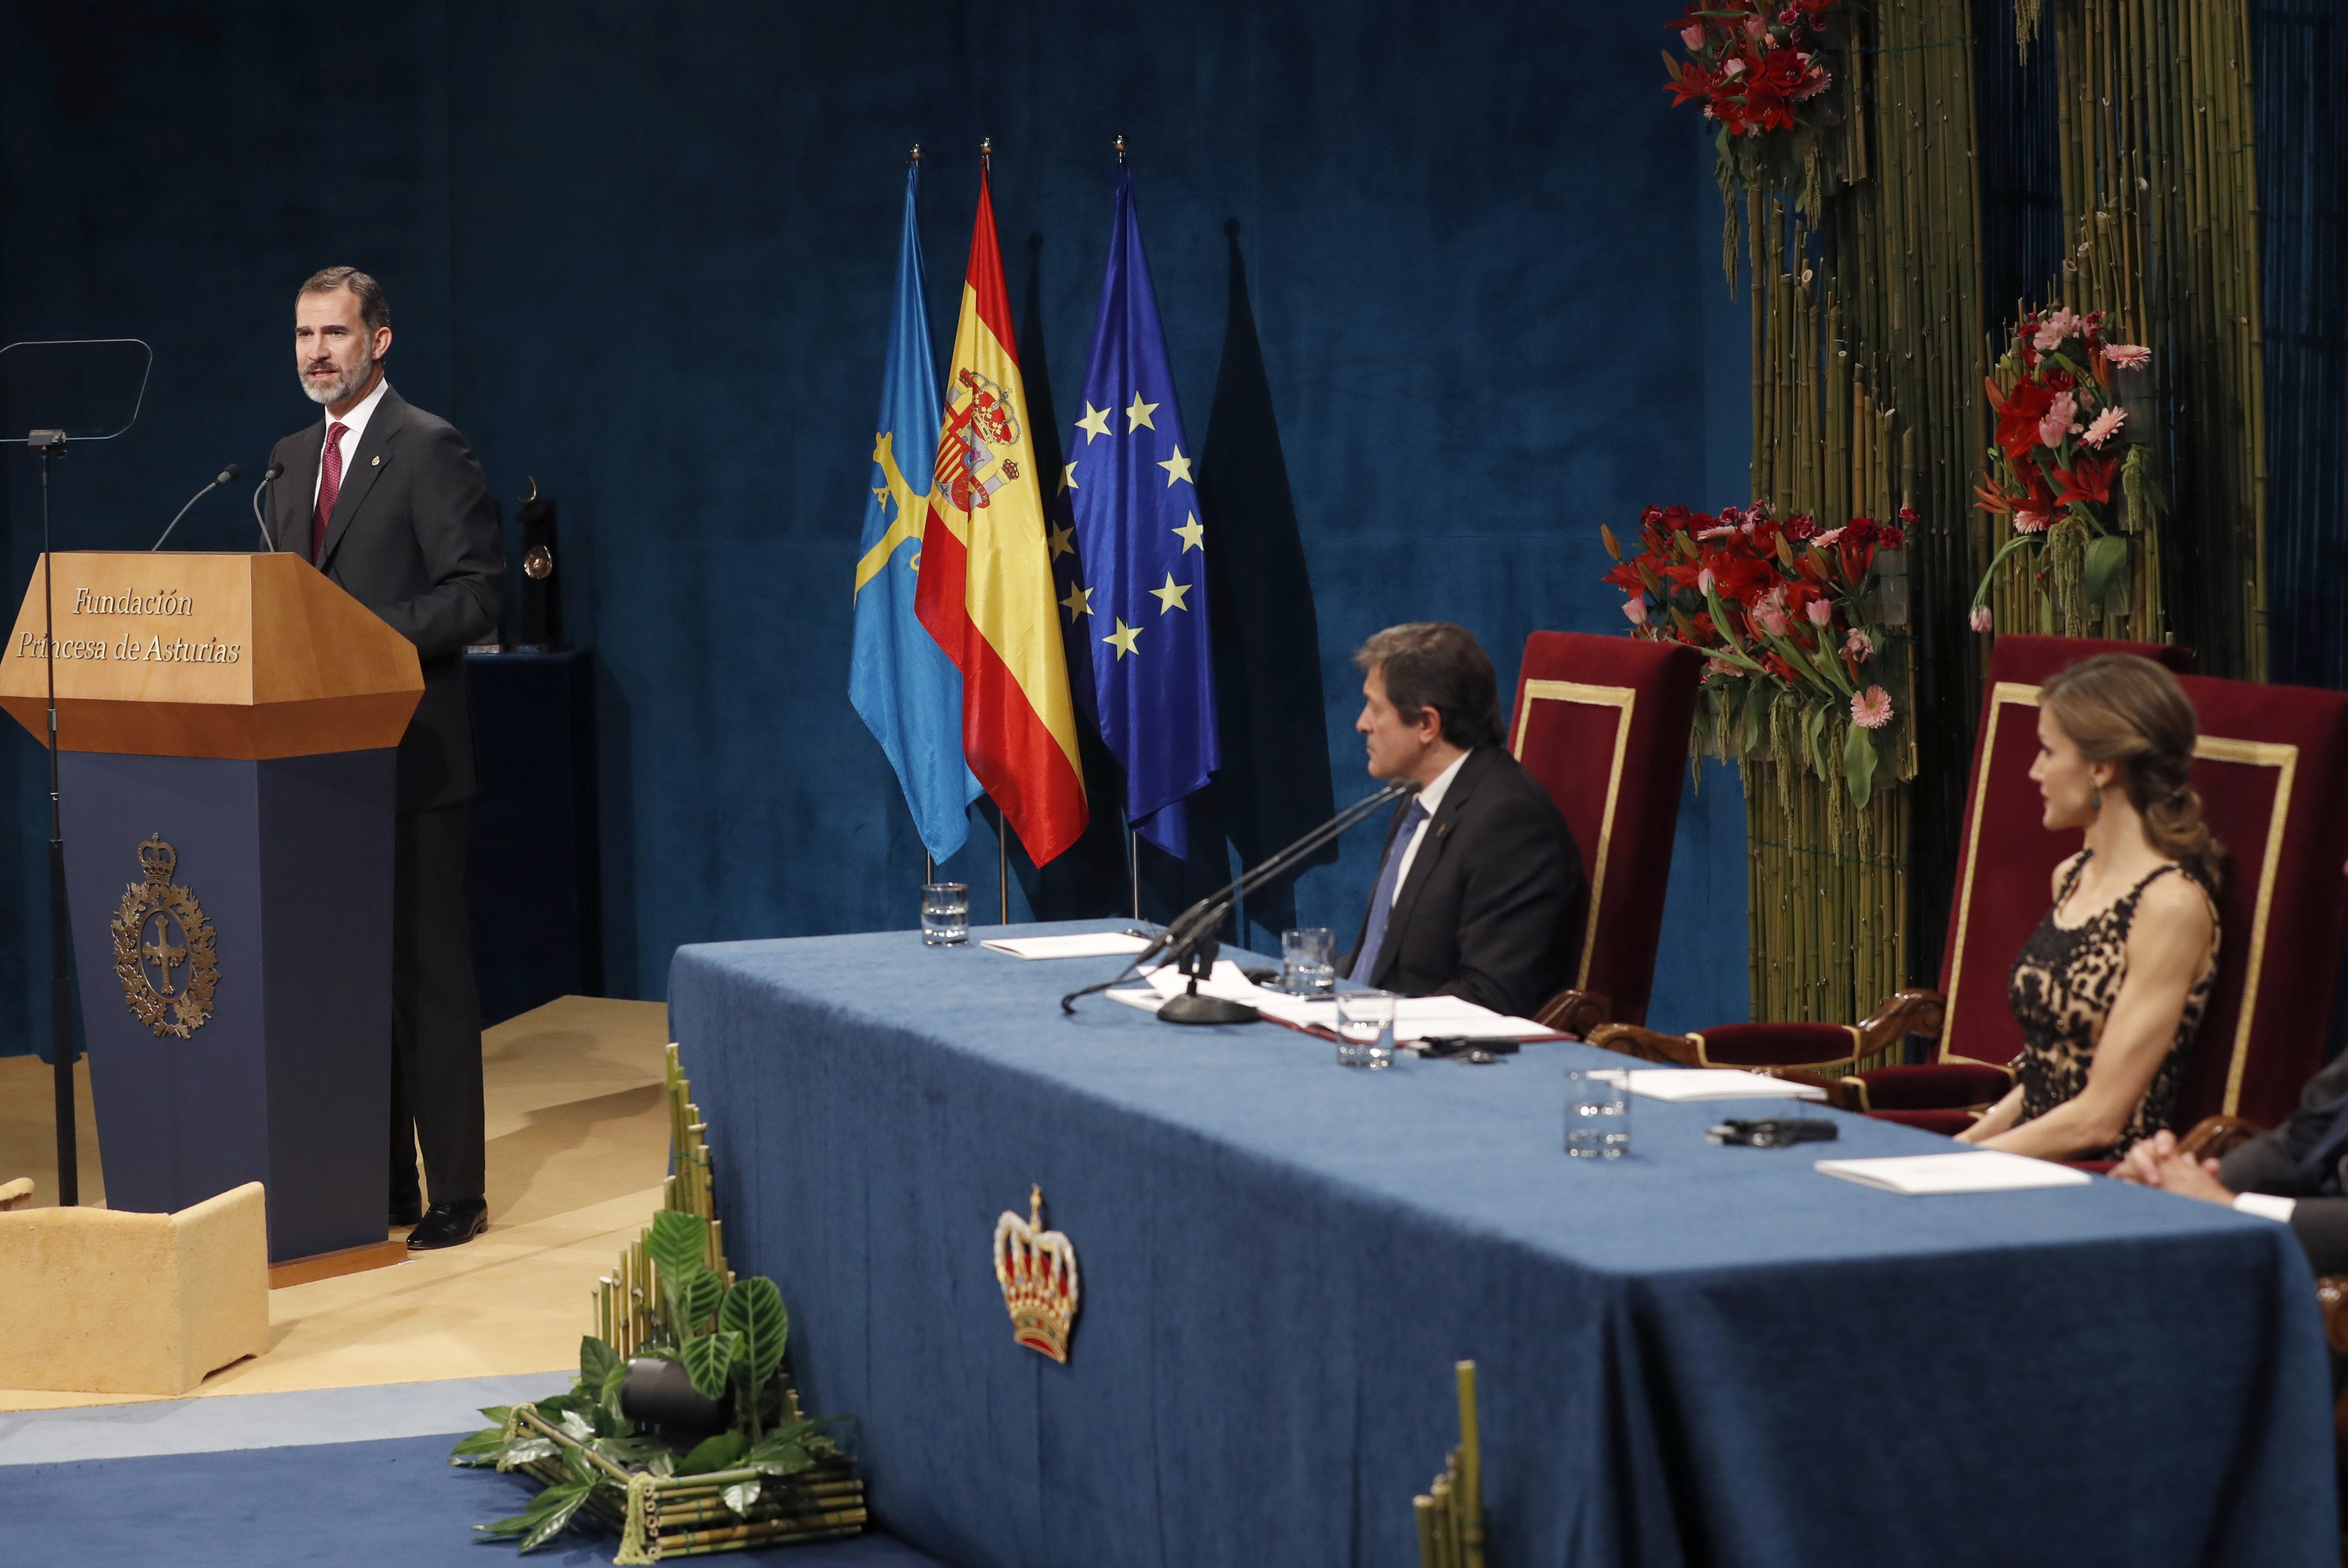 El Rey Felipe pronuncia su discurso durante la ceremonia de entrega de los Premios Princesa de Asturias 2016.